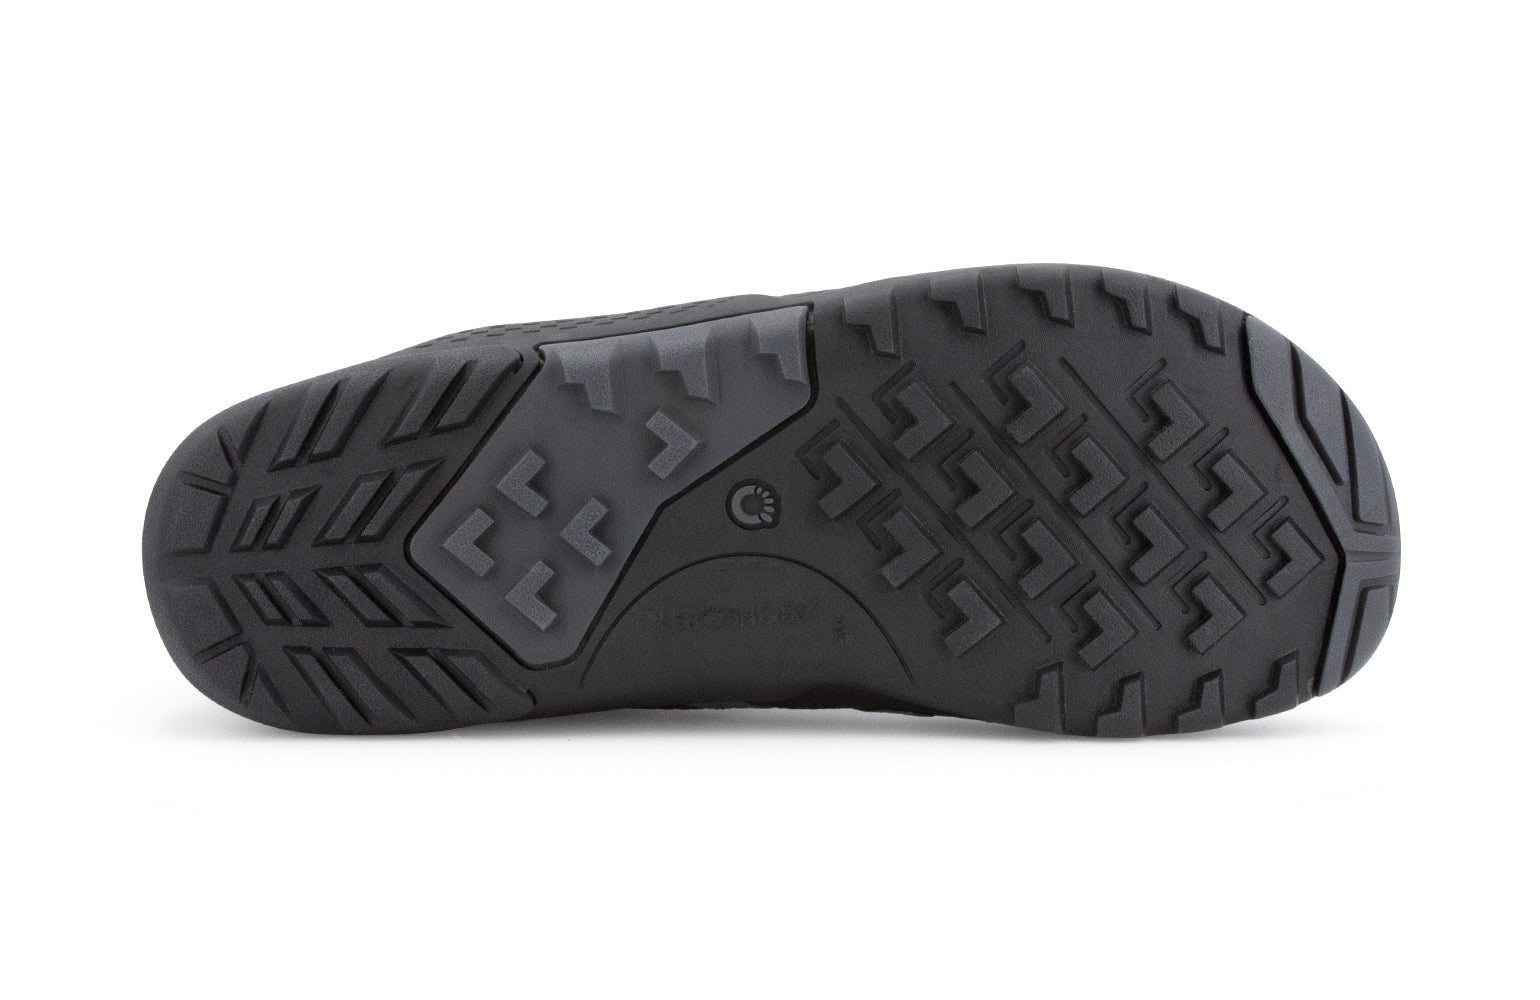 Xero Shoes Xcursion Fusion barfods støvler til mænd i farven black, saal